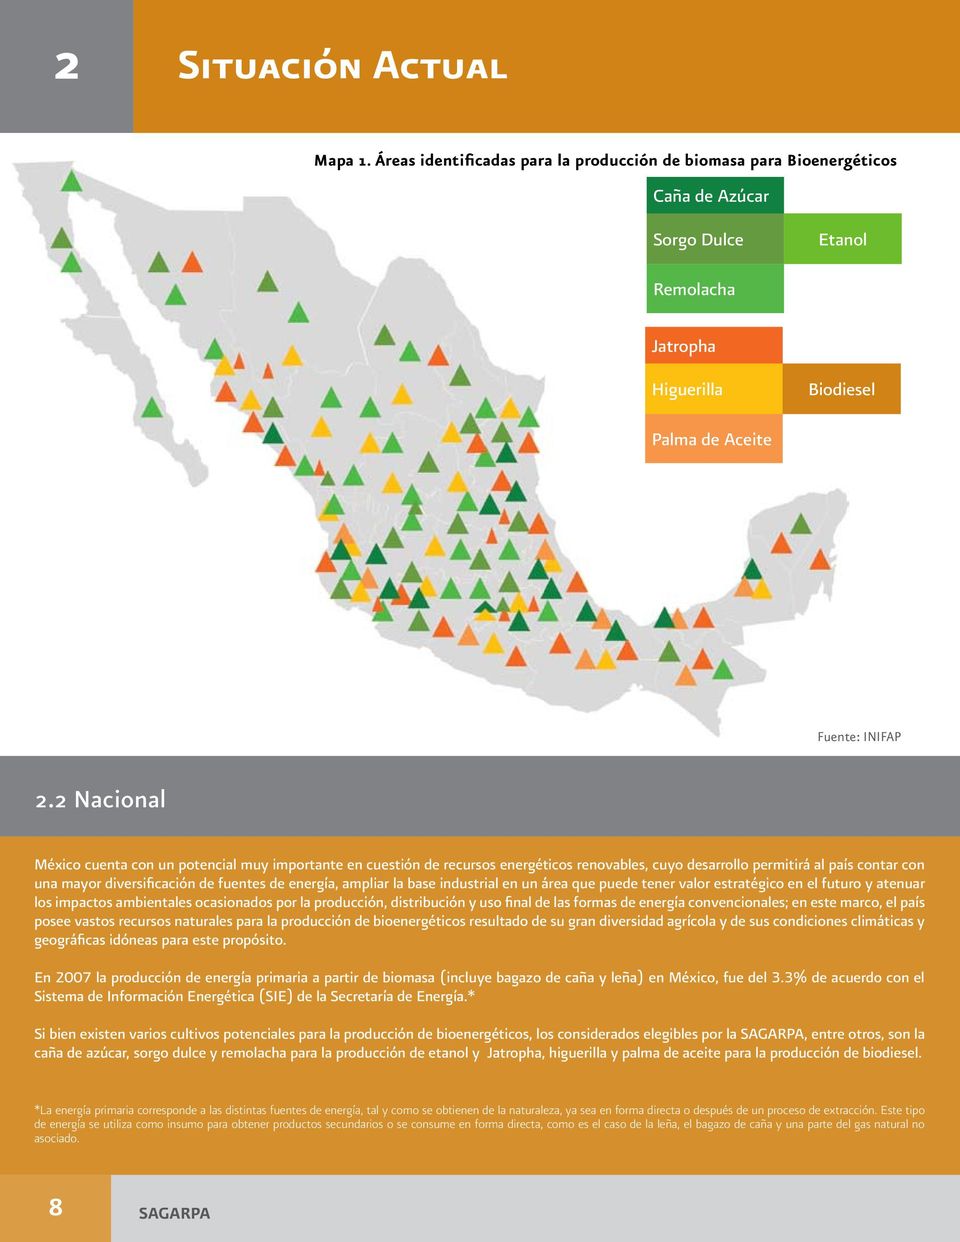 2 Nacional México cuenta con un potencial muy importante en cuestión de recursos energéticos renovables, cuyo desarrollo permitirá al país contar con una mayor diversificación de fuentes de energía,